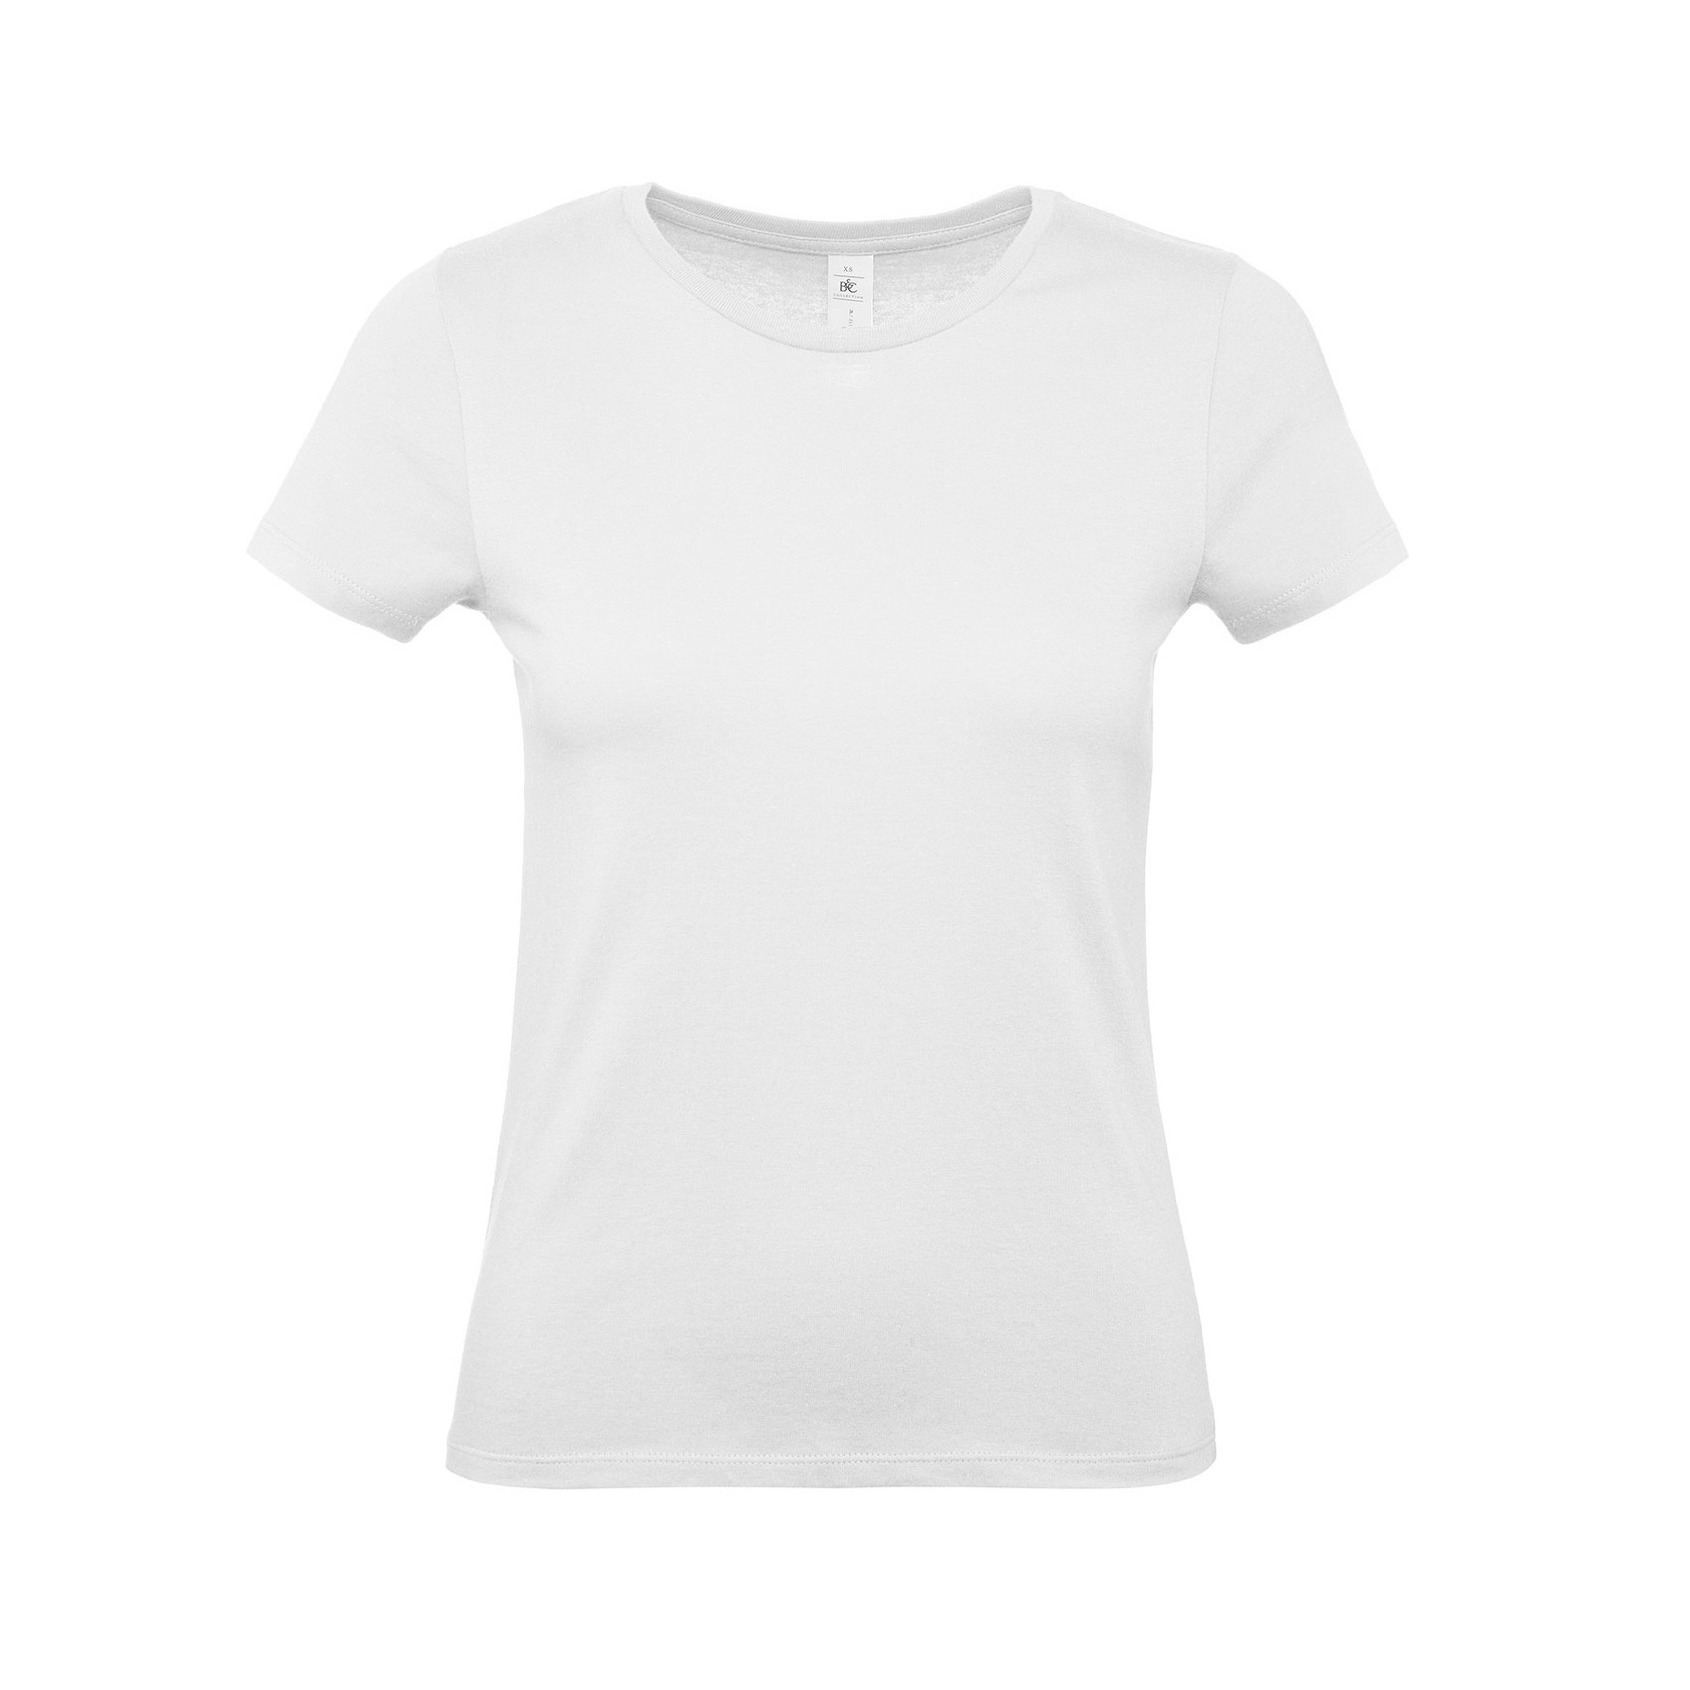 Set van 4x stuks wit basic t-shirts met ronde hals voor dames van katoen, maat: XL (42)